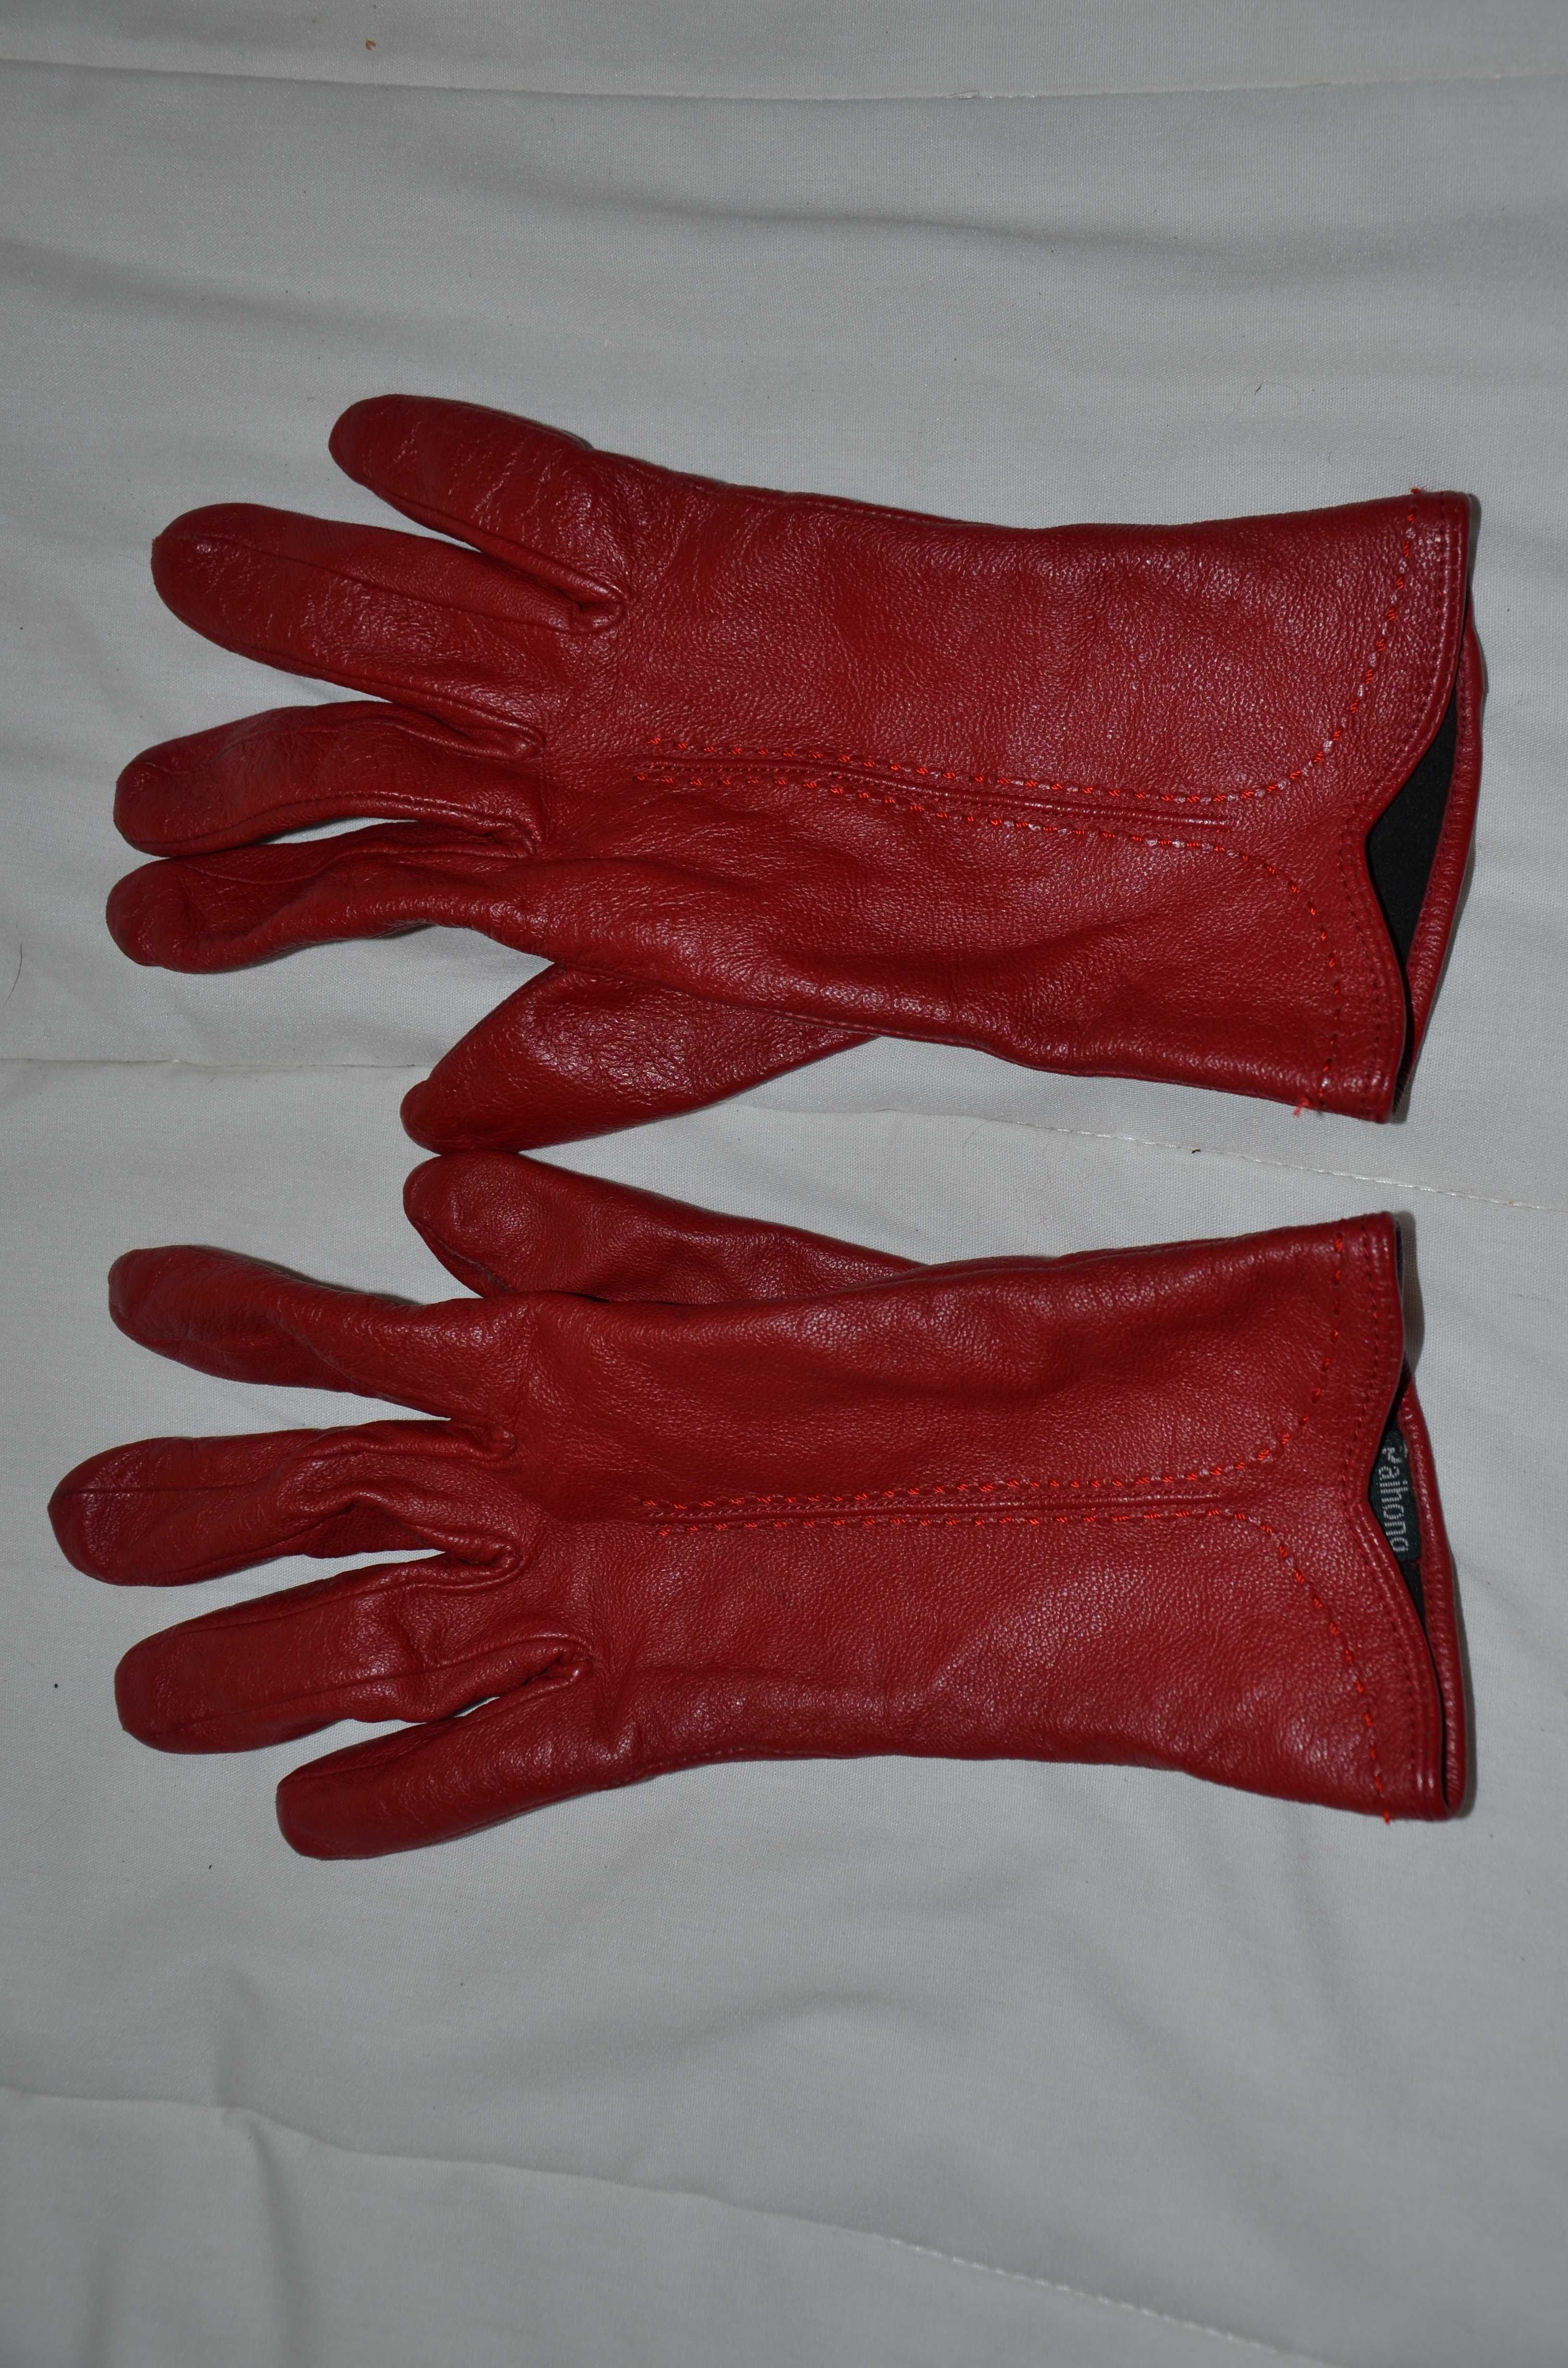 Czerwone skórzane rękawiczki r. 7